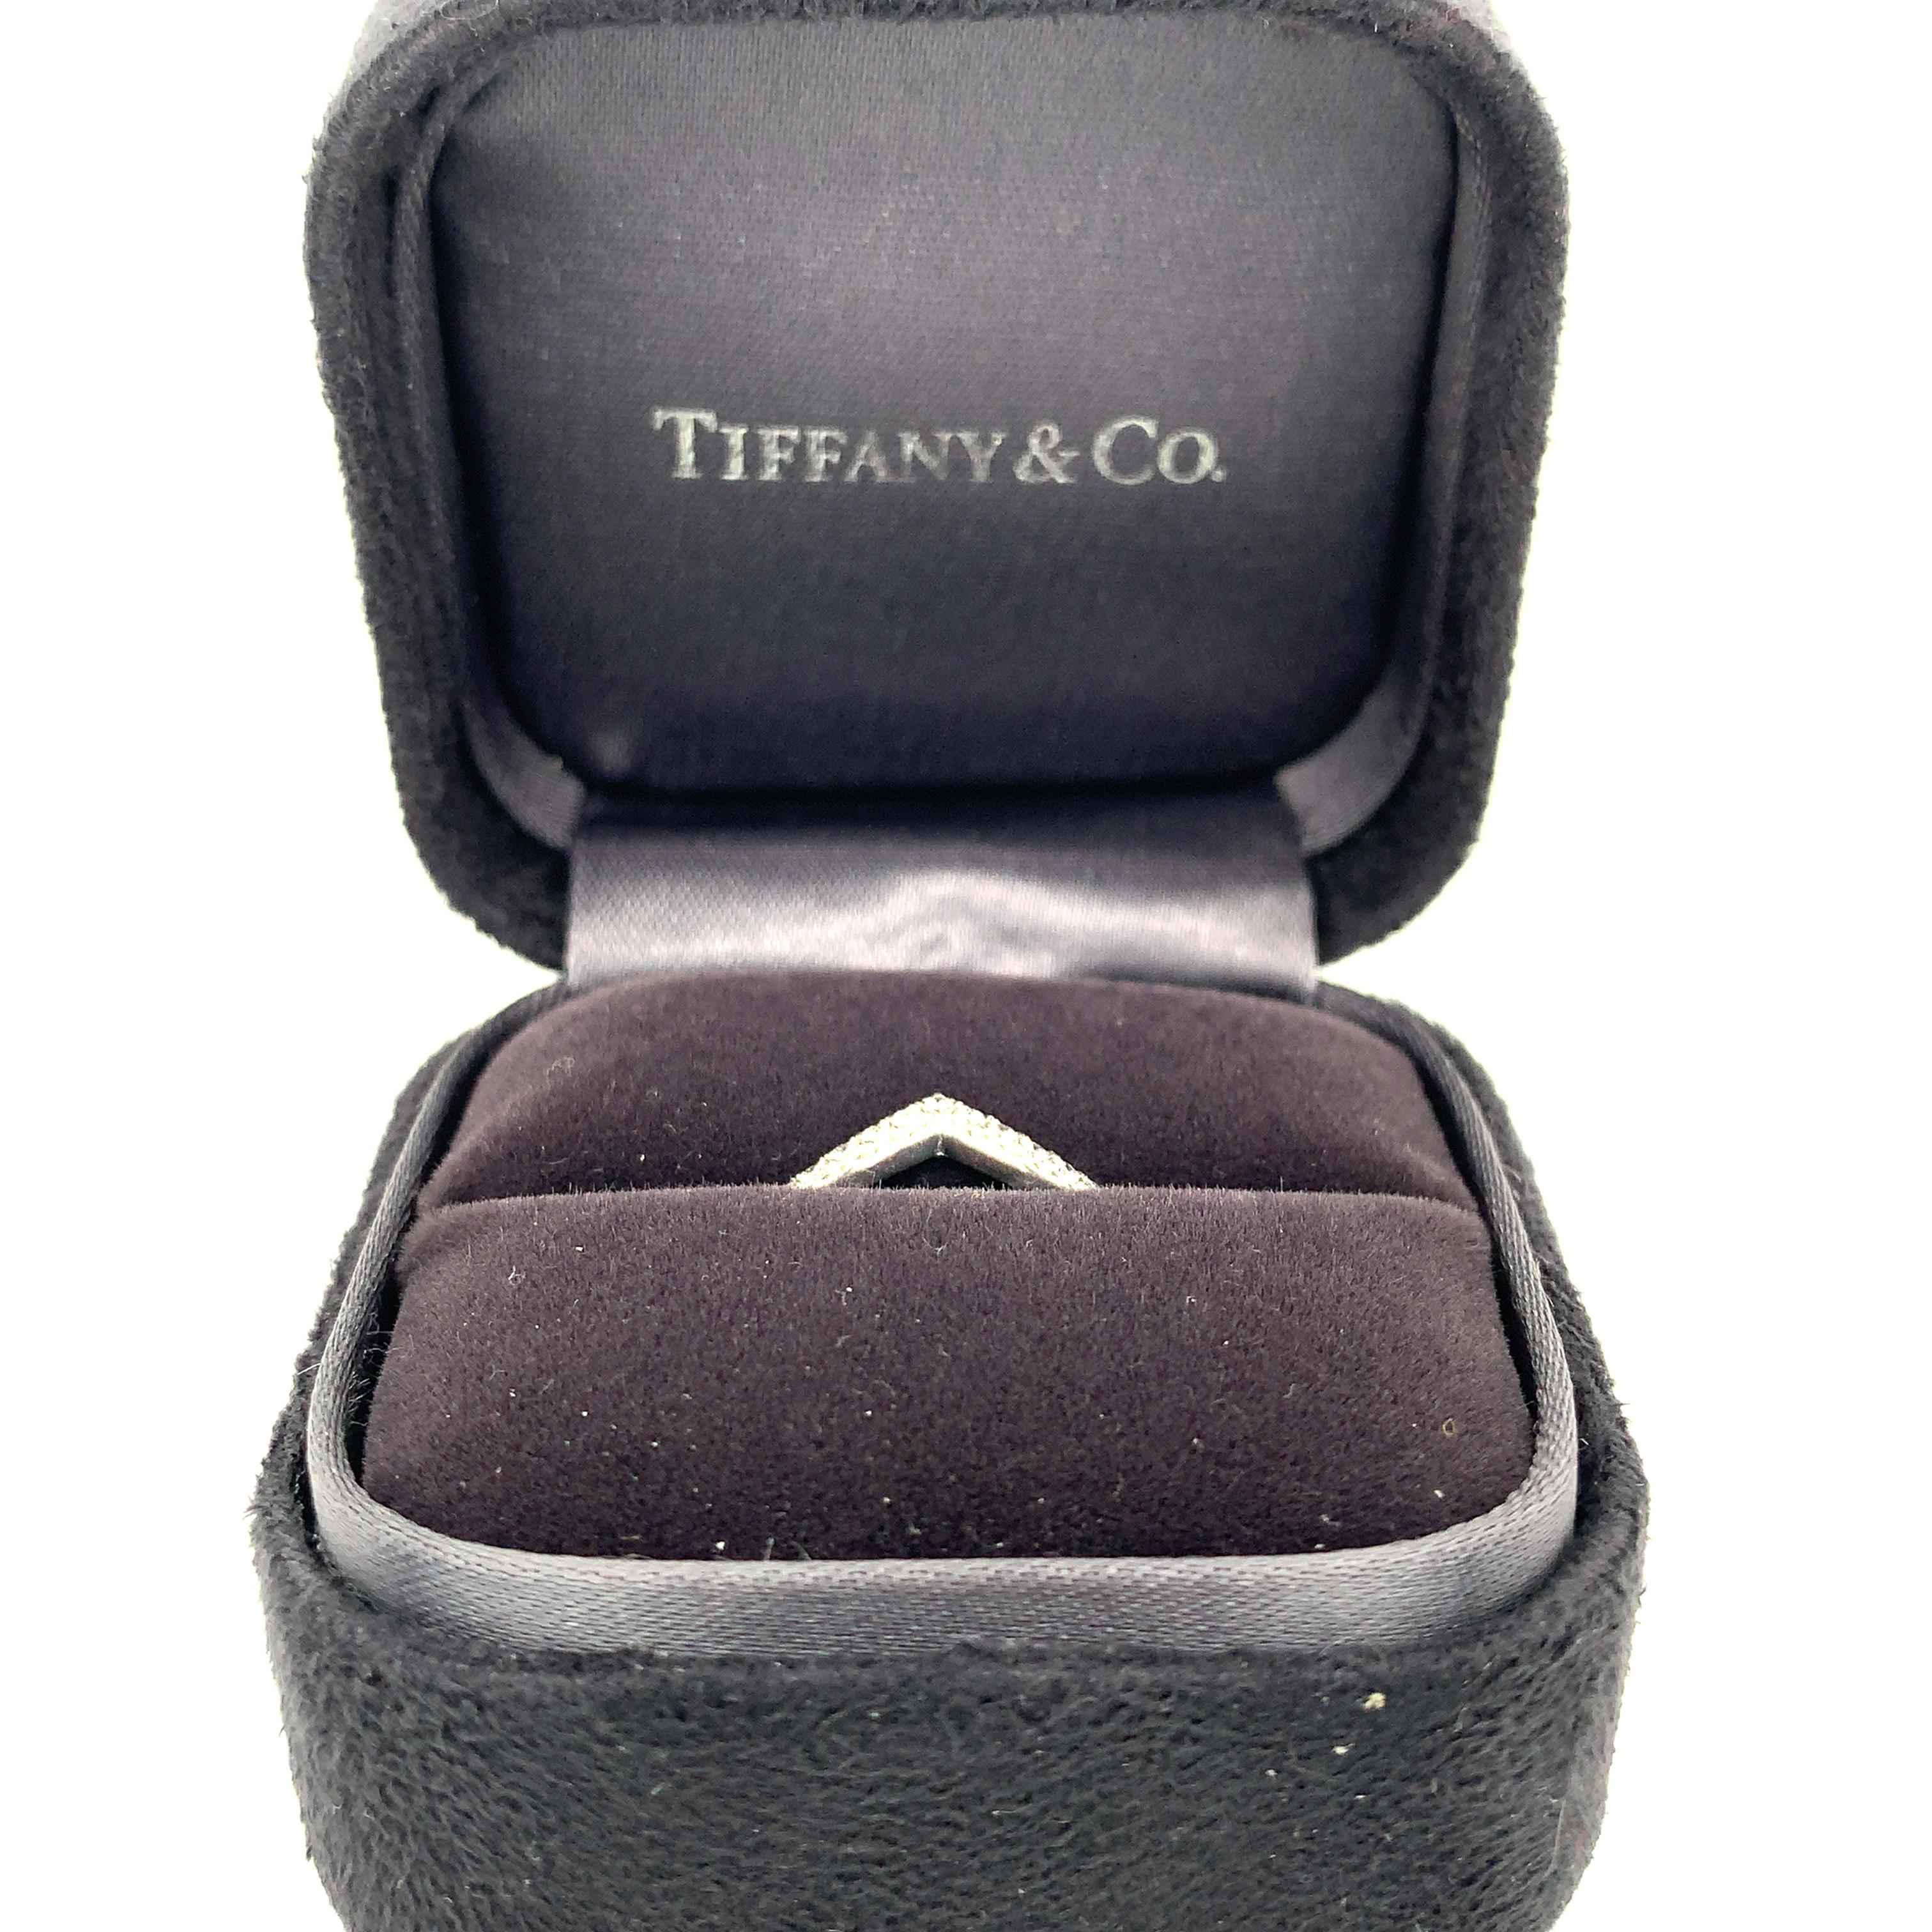 Tiffany & Co Platinum Round Diamond V Ring (bague en V en diamant rond)
Taille de l'anneau 5.5
3,3 grammes
Diamants blancs de taille ronde et brillante 0.15 carats de poids total
Couleur : F
Clarté : VS2

Il s'agit d'un magnifique bracelet en